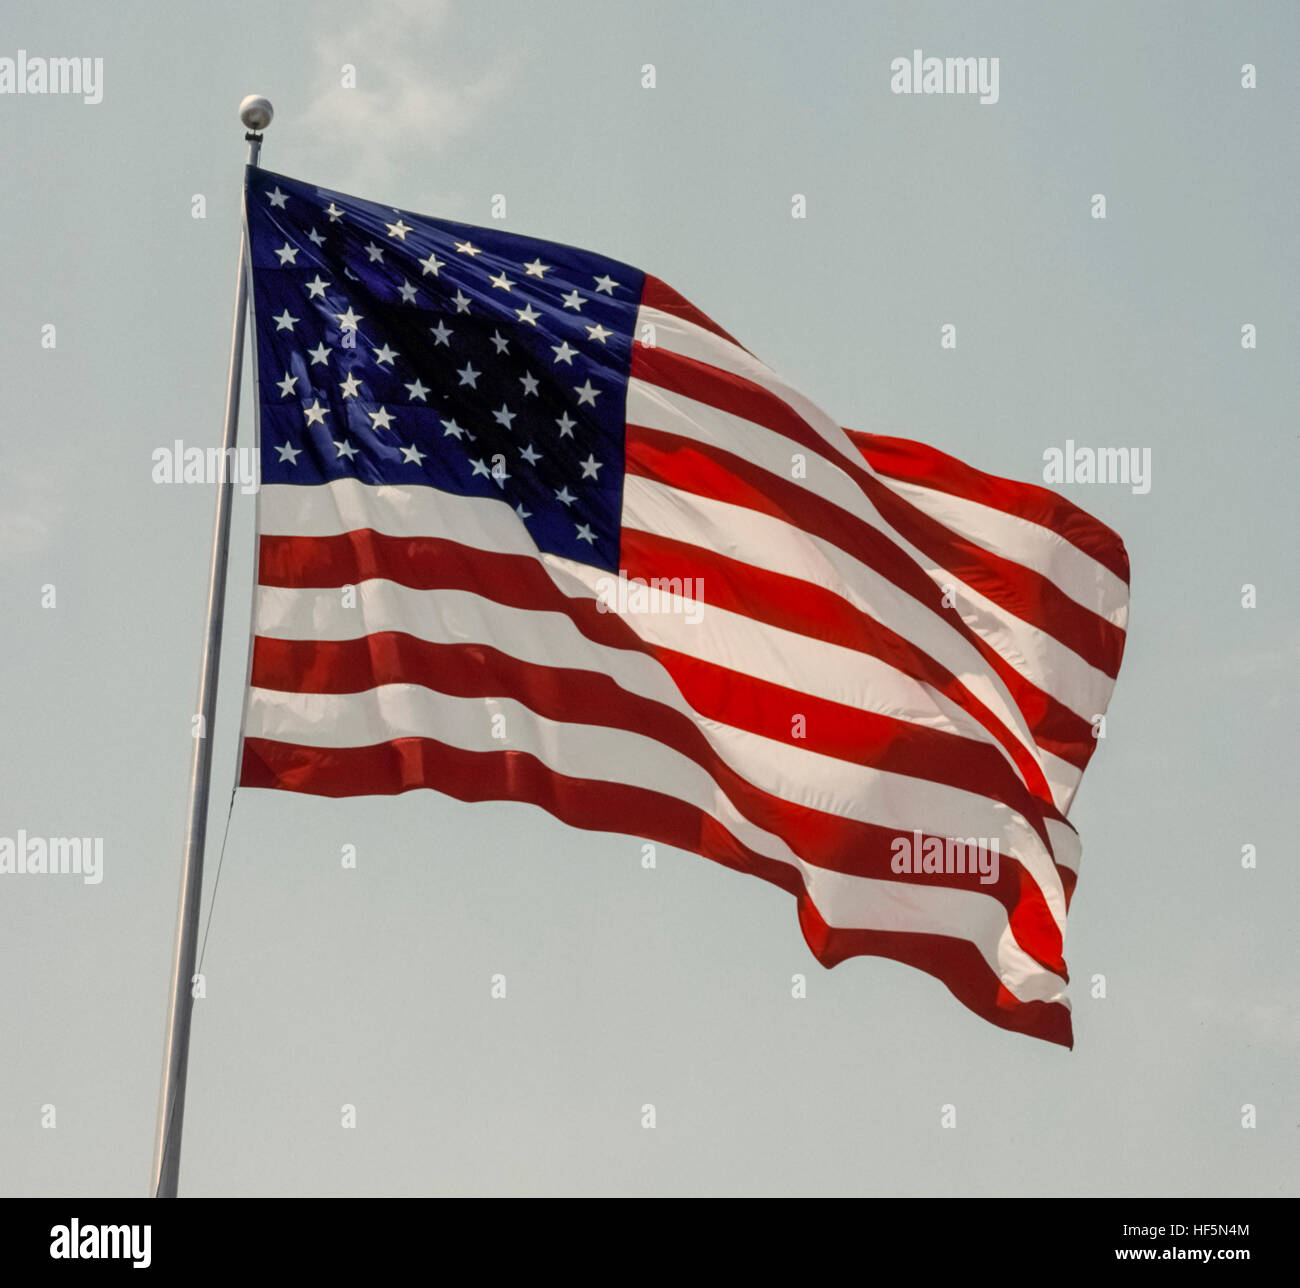 La bandera nacional de los Estados Unidos de América es conocido como la bandera  americana, el Stars & Stripes, vieja gloria, y el Star-Spangled Banner. El  50 de cinco puntas blancas pequeñas